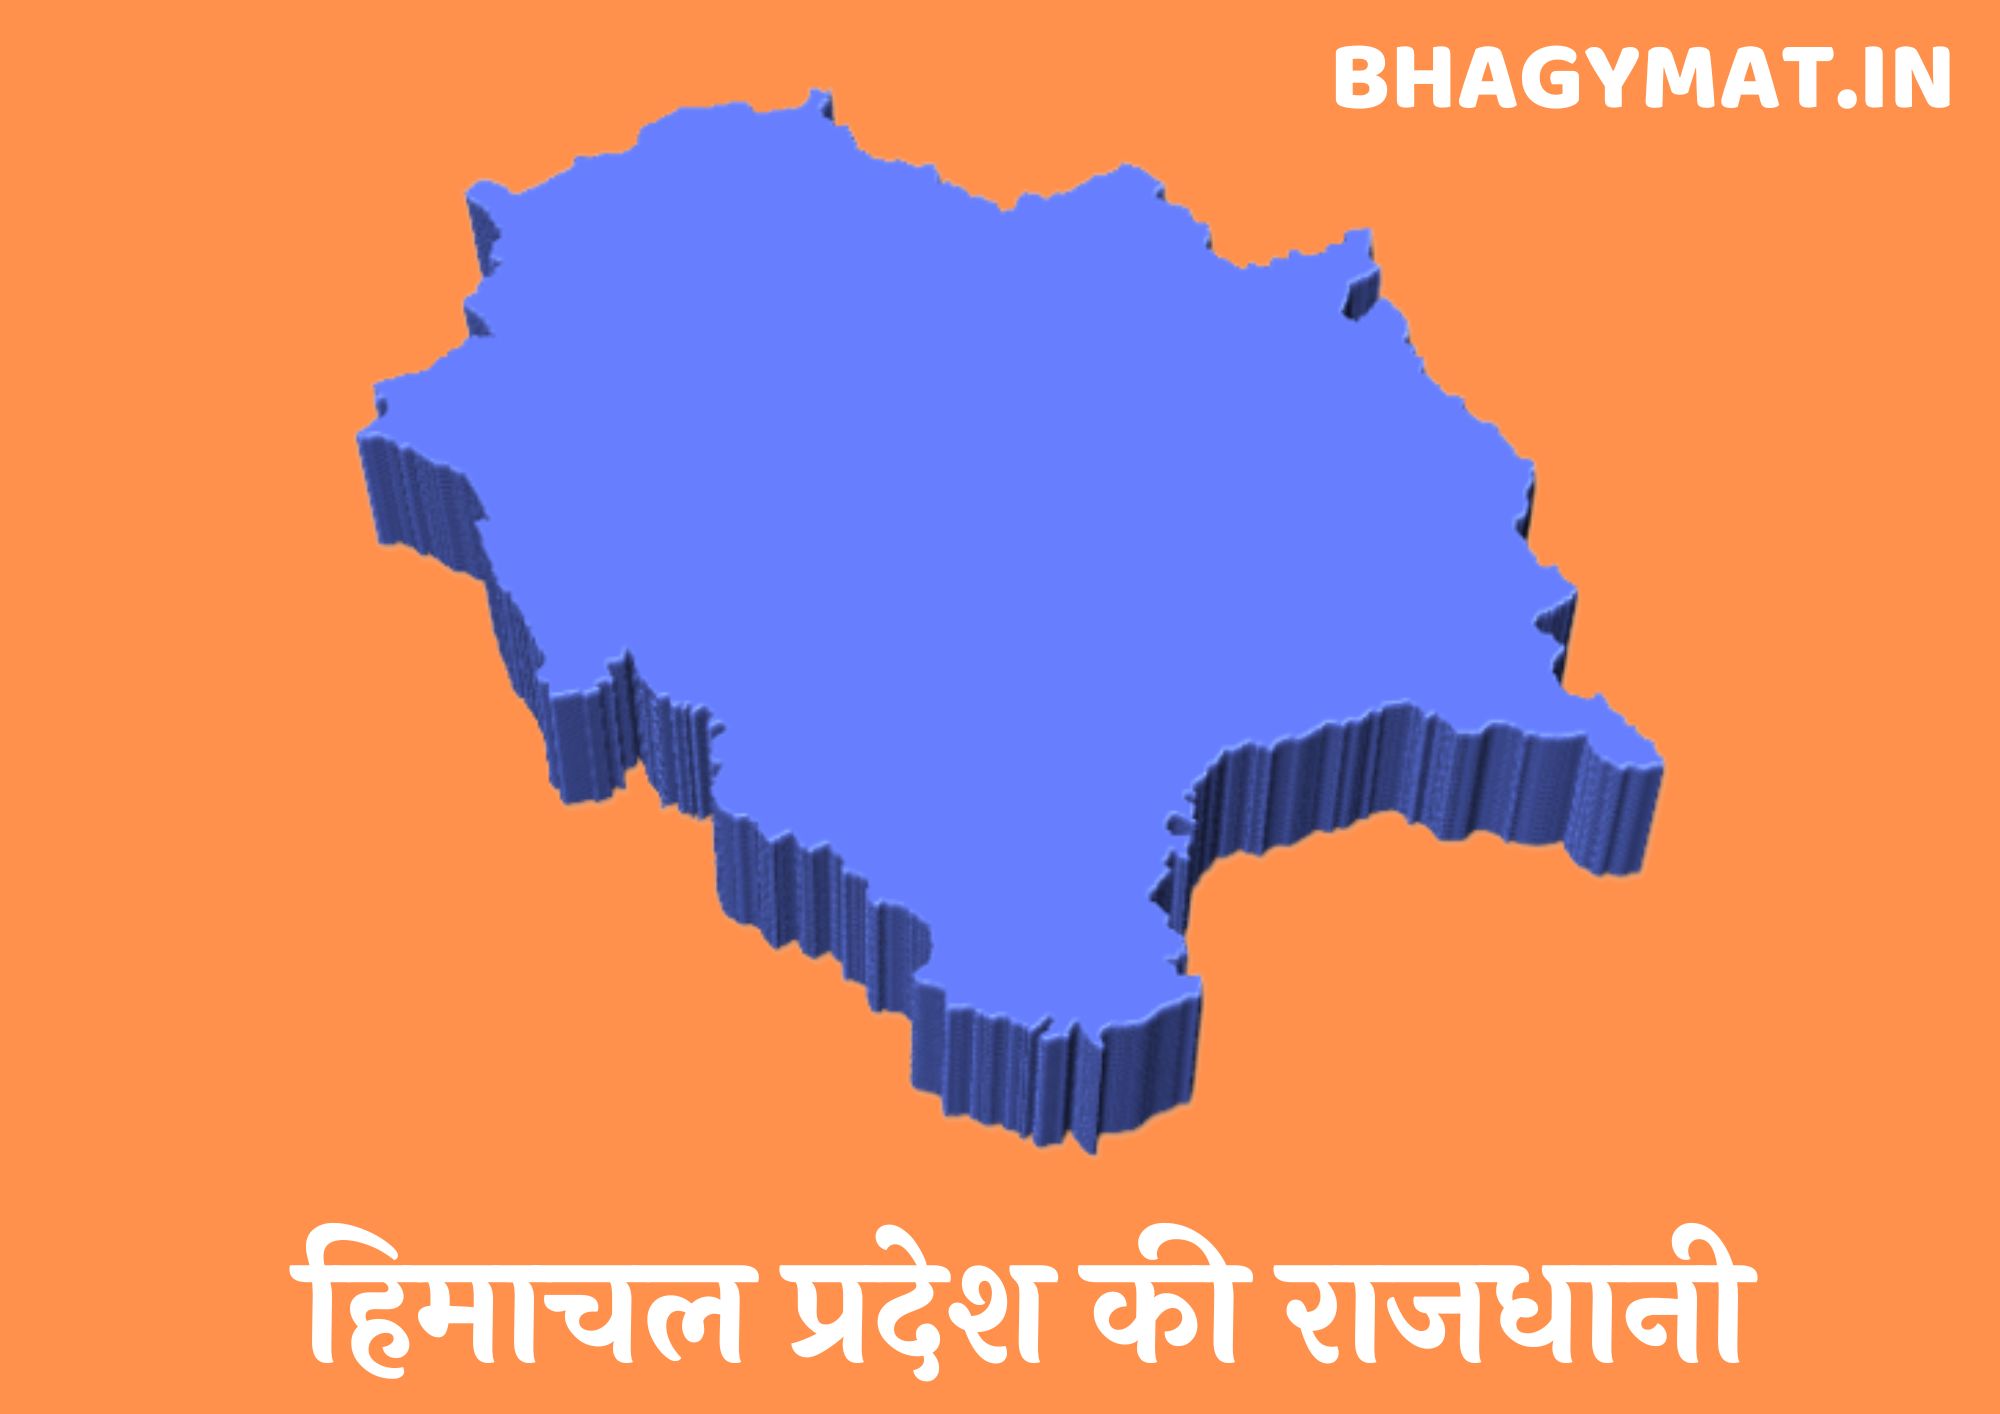 हिमाचल प्रदेश की राजधानी कहां है (हिमाचल प्रदेश की राजधानी क्या है) – Himachal Pradesh Ki Rajdhani Kahan Hai | Himachal Pradesh Ki Rajdhani Kya Hai